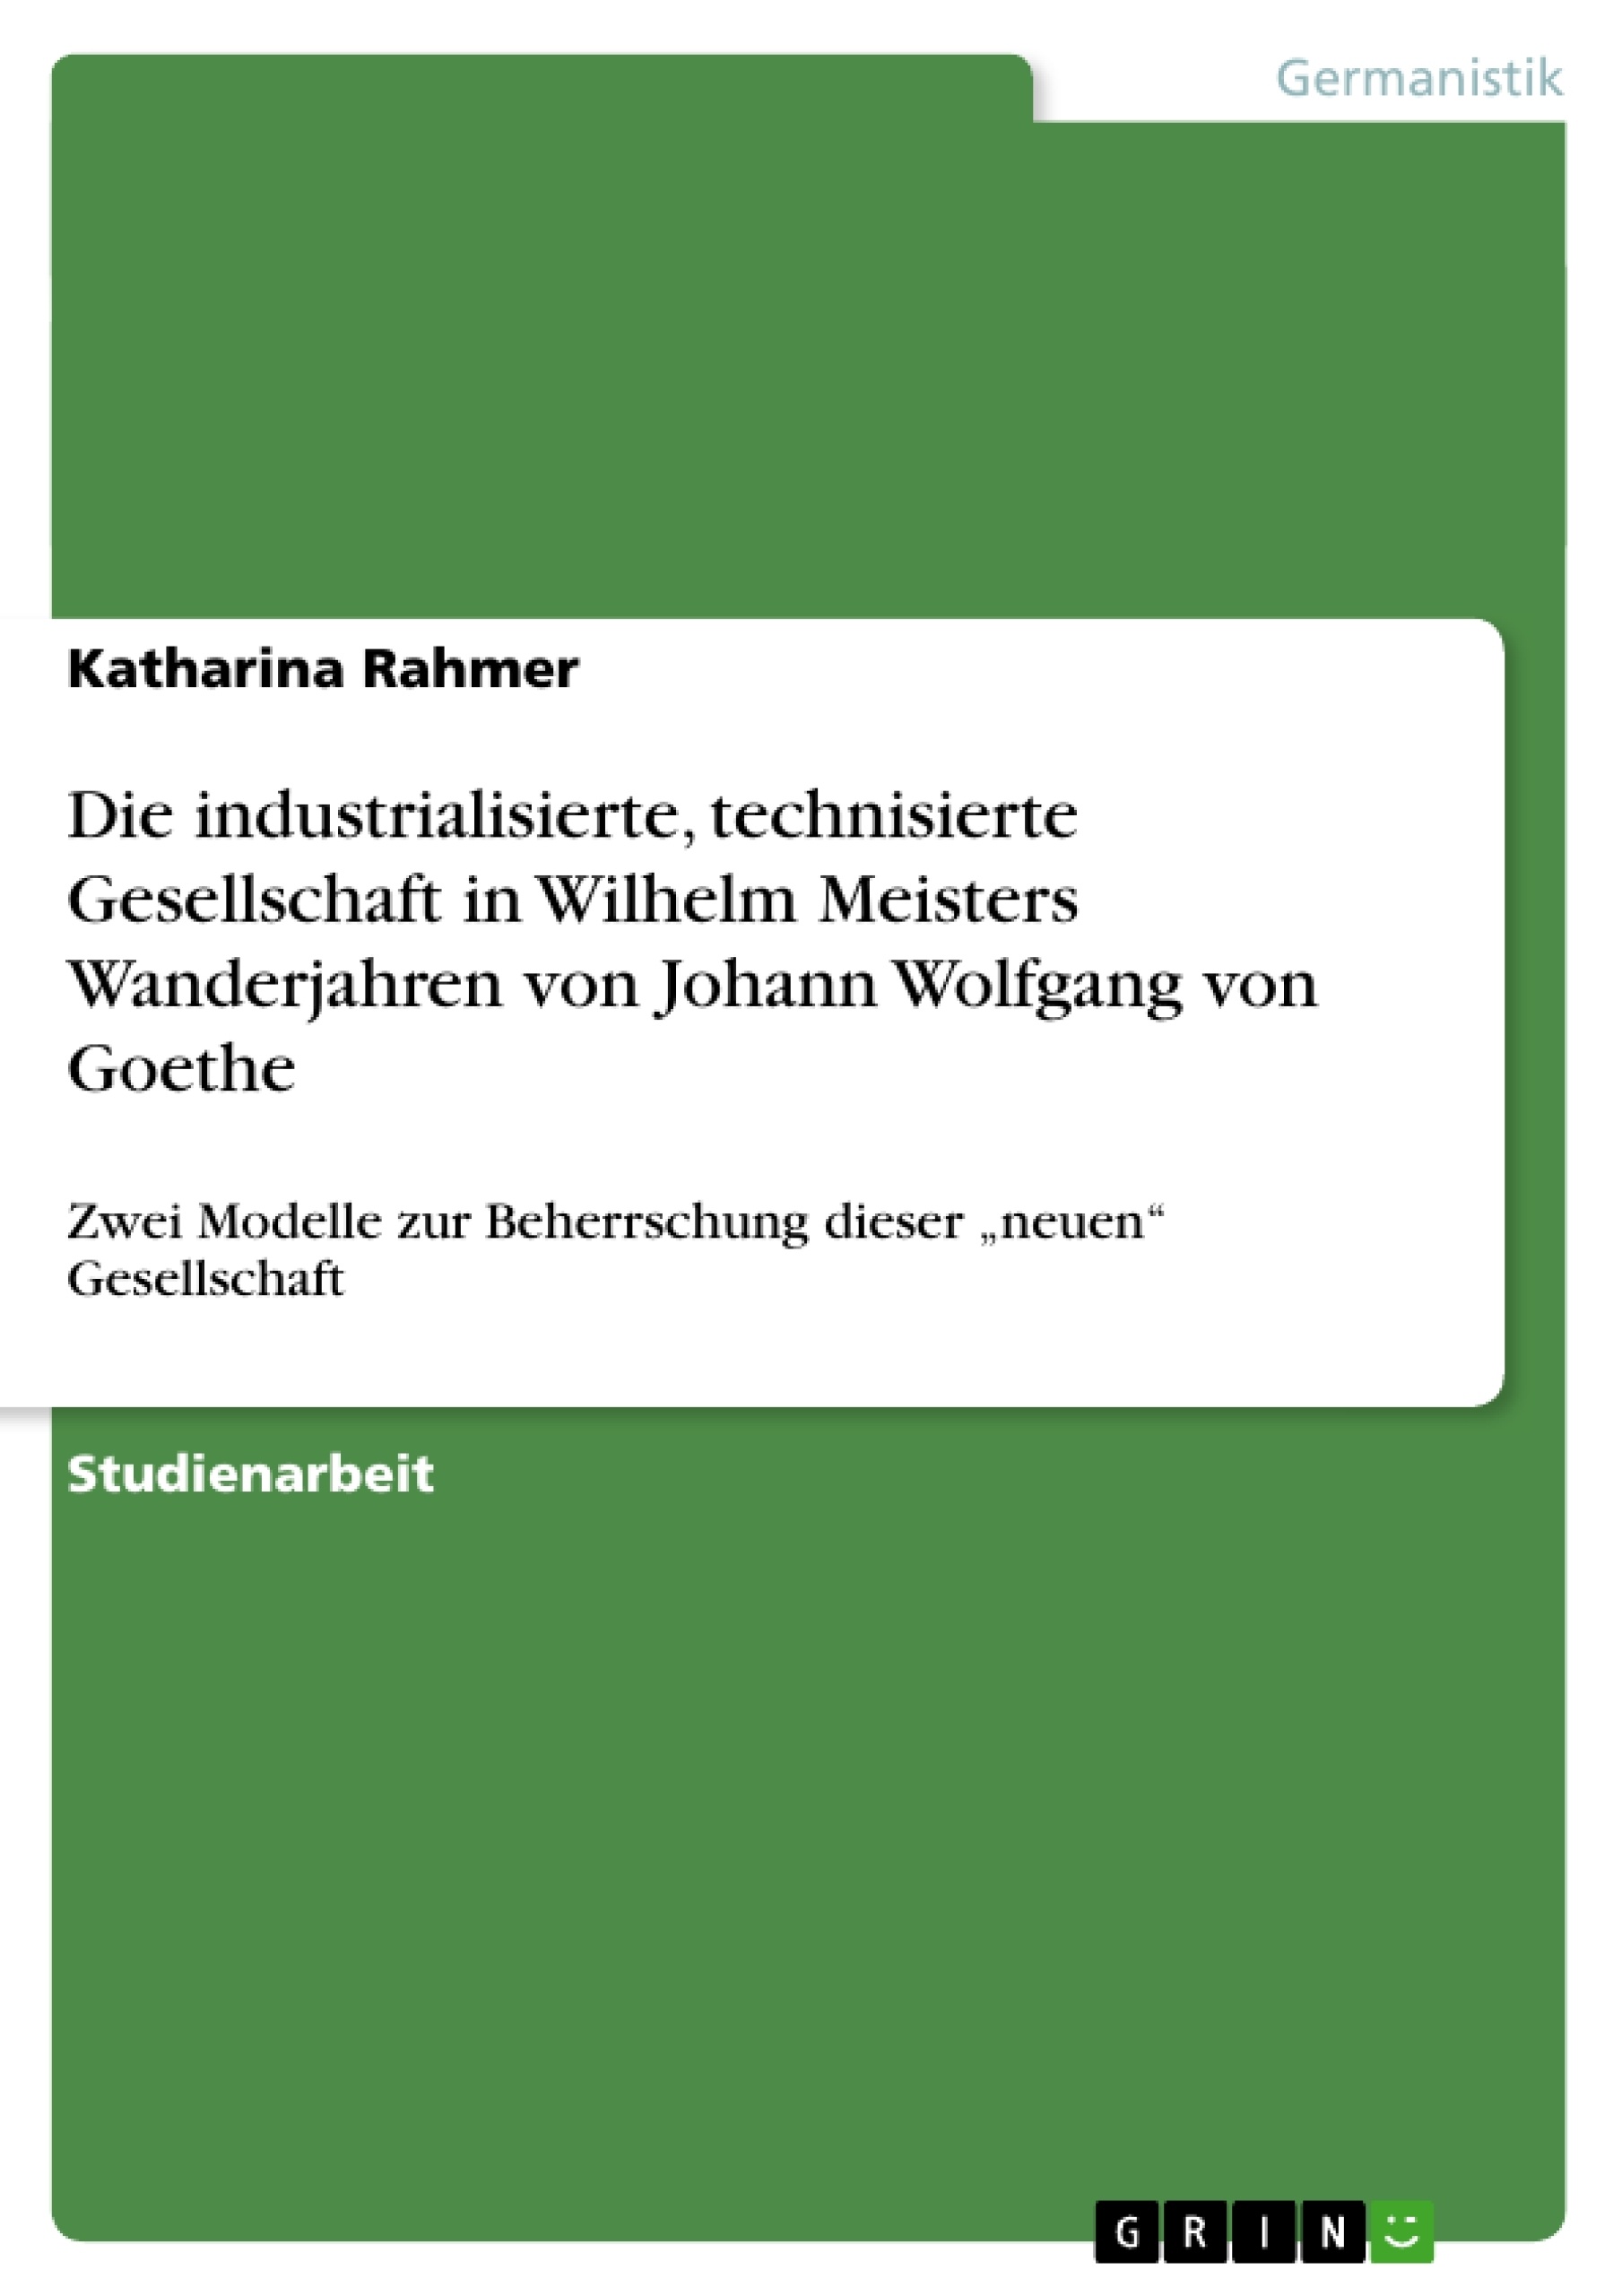 Title: Die industrialisierte, technisierte Gesellschaft in Wilhelm Meisters Wanderjahren von Johann Wolfgang von Goethe